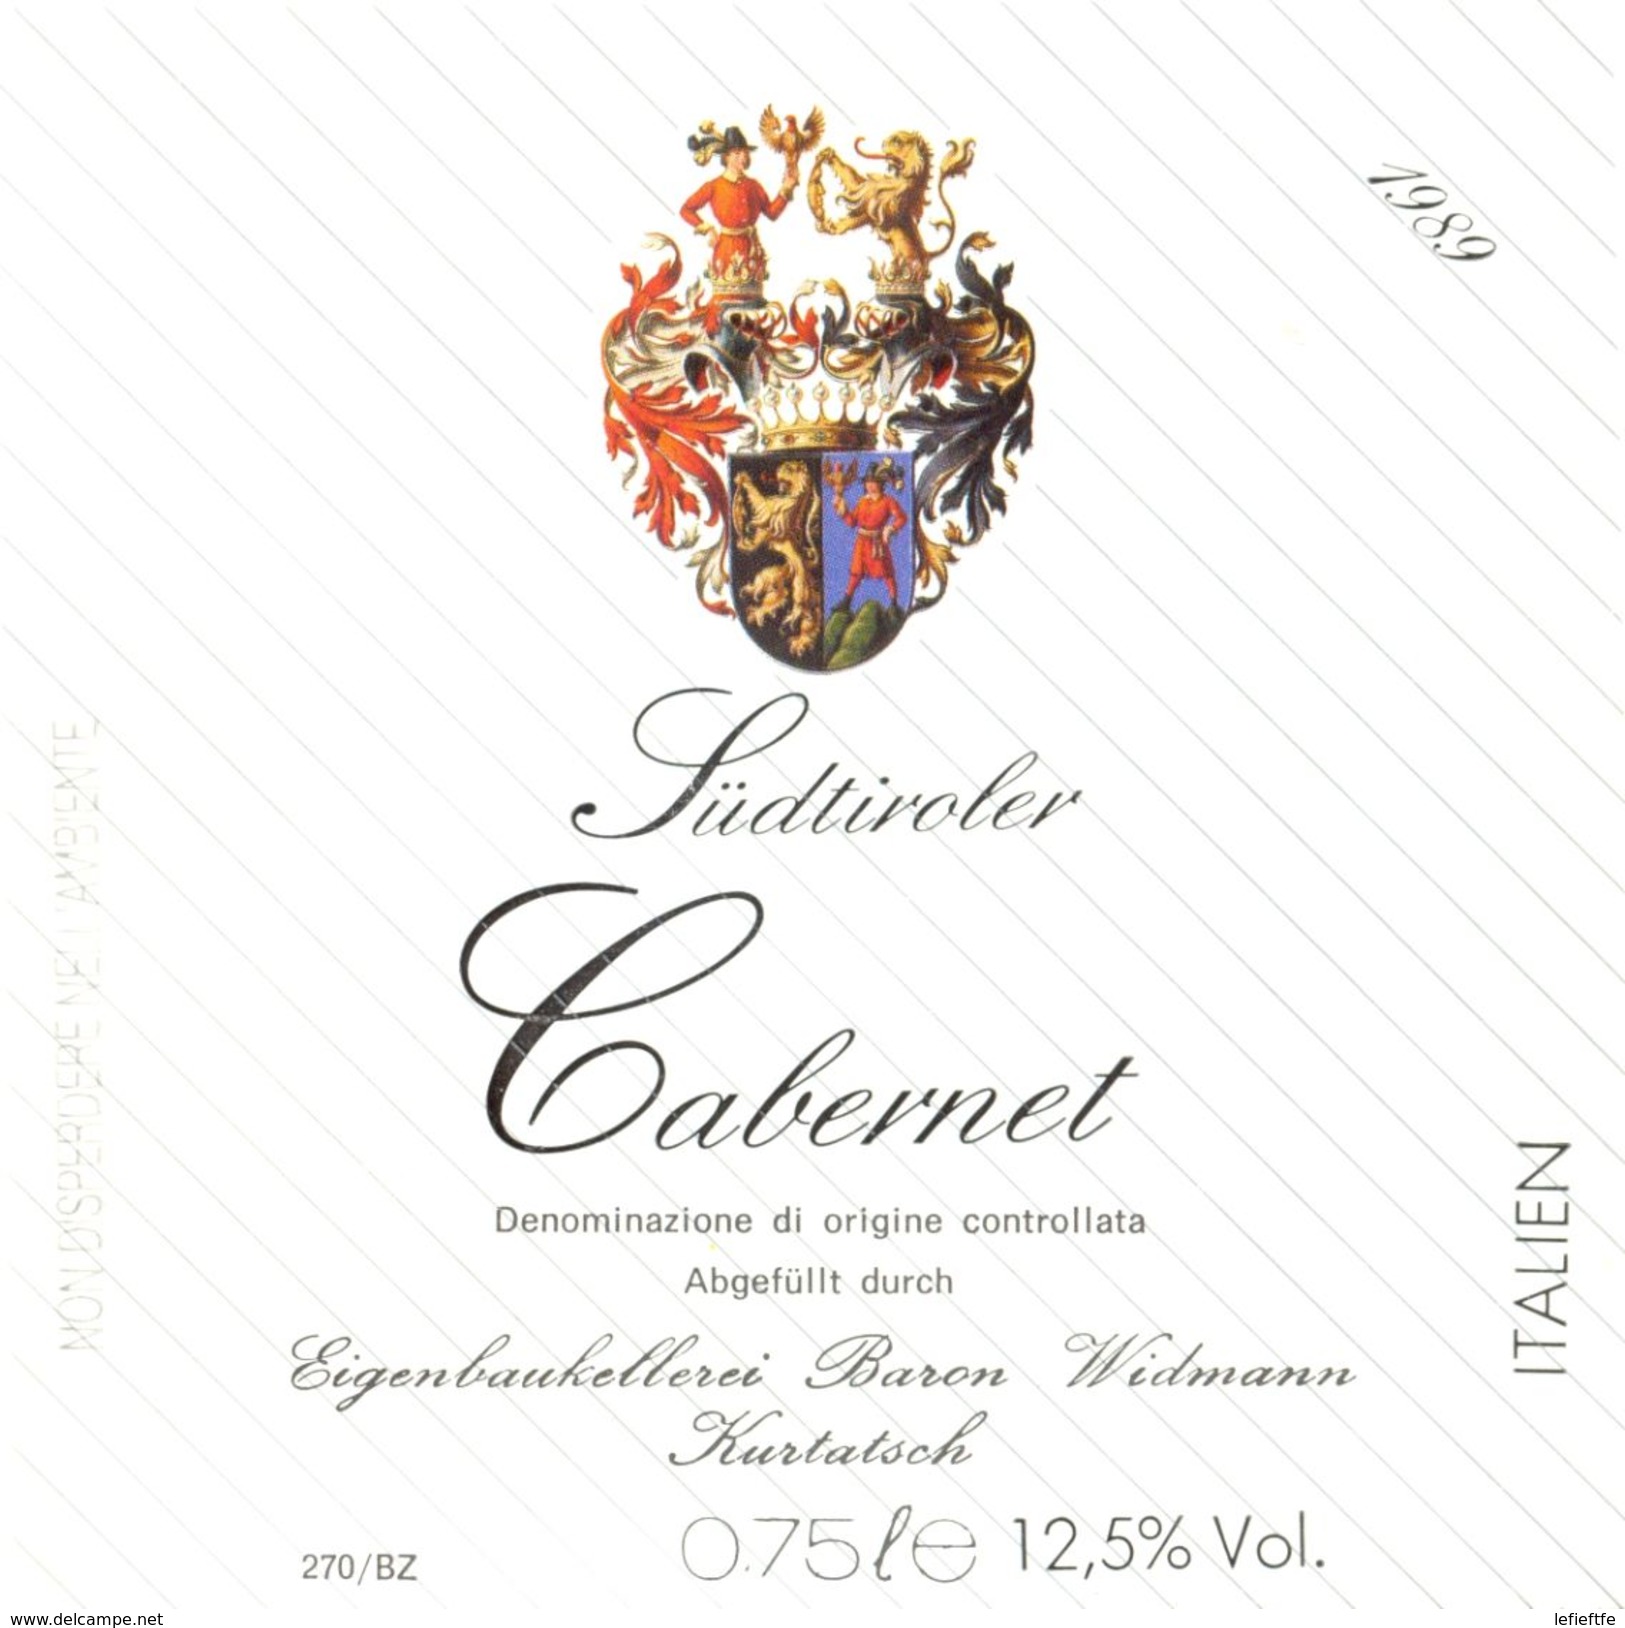 1419 - Italie - 1989 - Cabernet Südtiroler - Baron Widmann - Kurtatsch - Rode Wijn